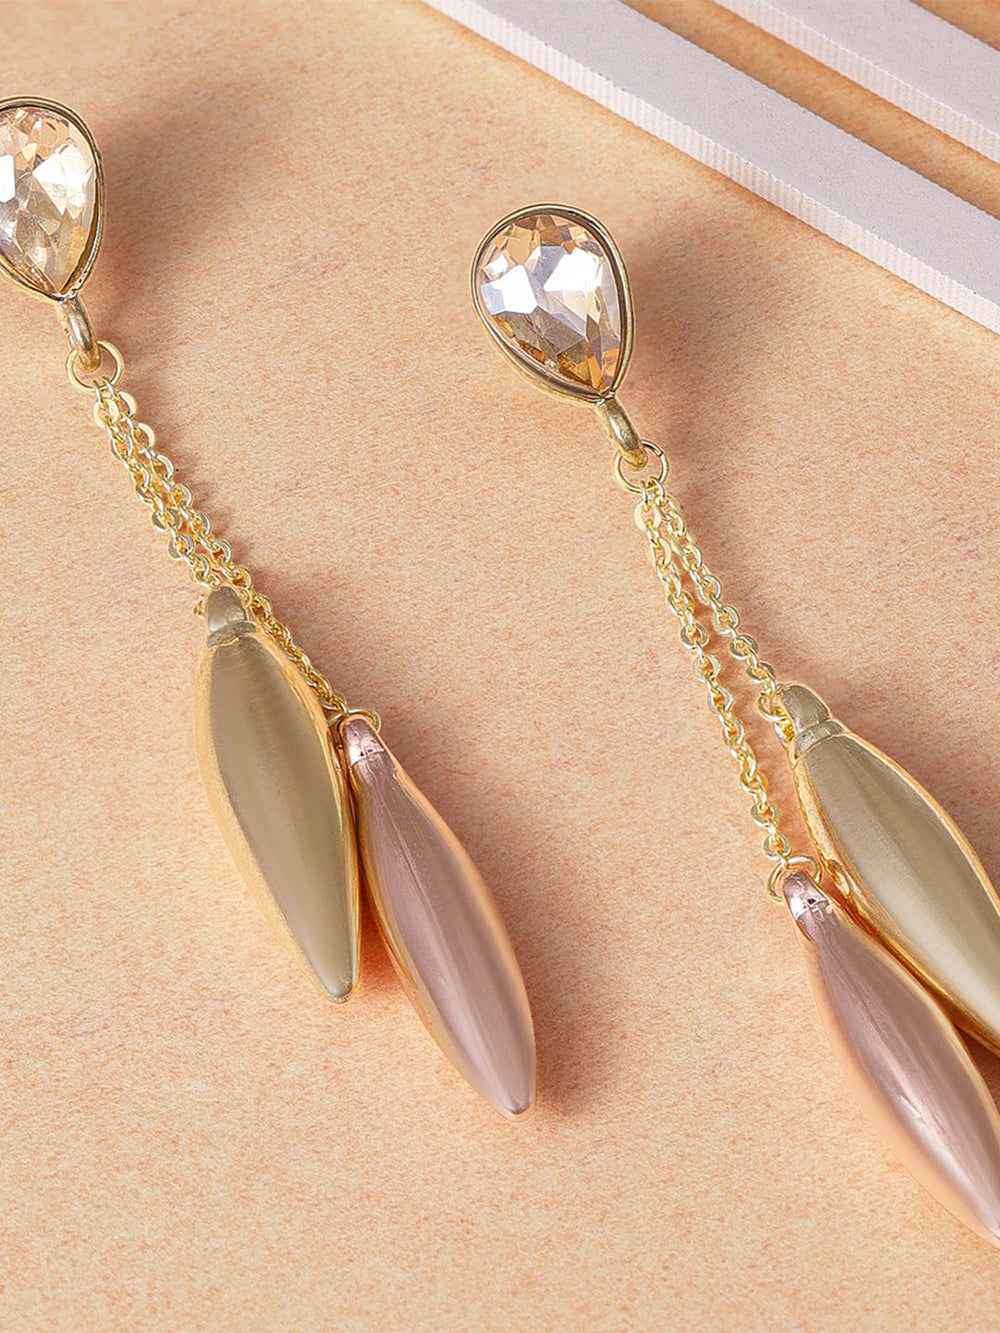 Rubans Voguish Radiant Elegance Gold Plated Crystal Drop Earrings Earrings